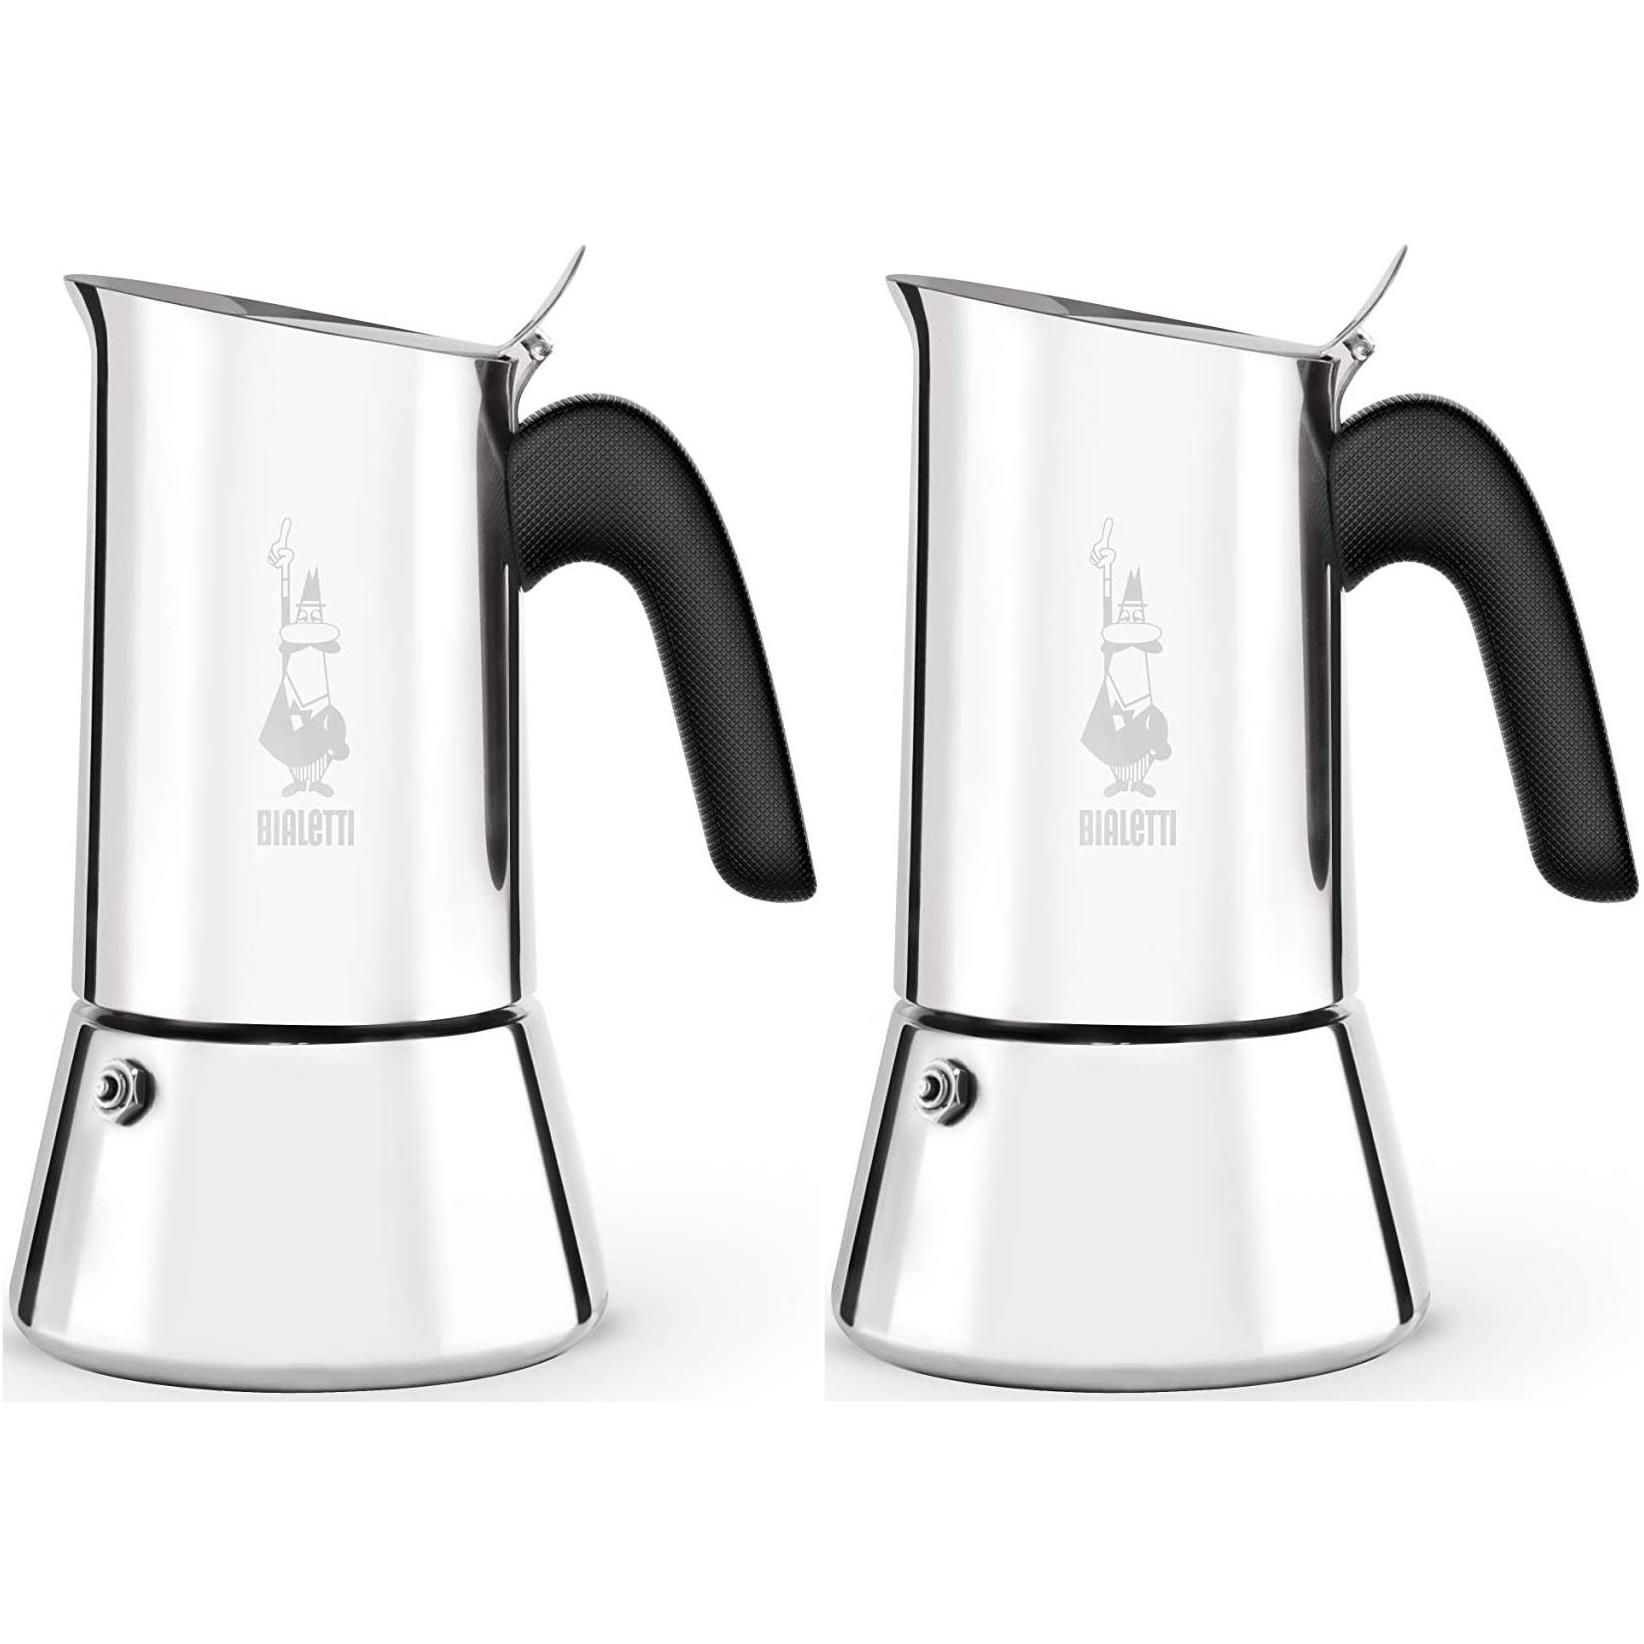 Bialetti Venus espresso machine for 2 cups